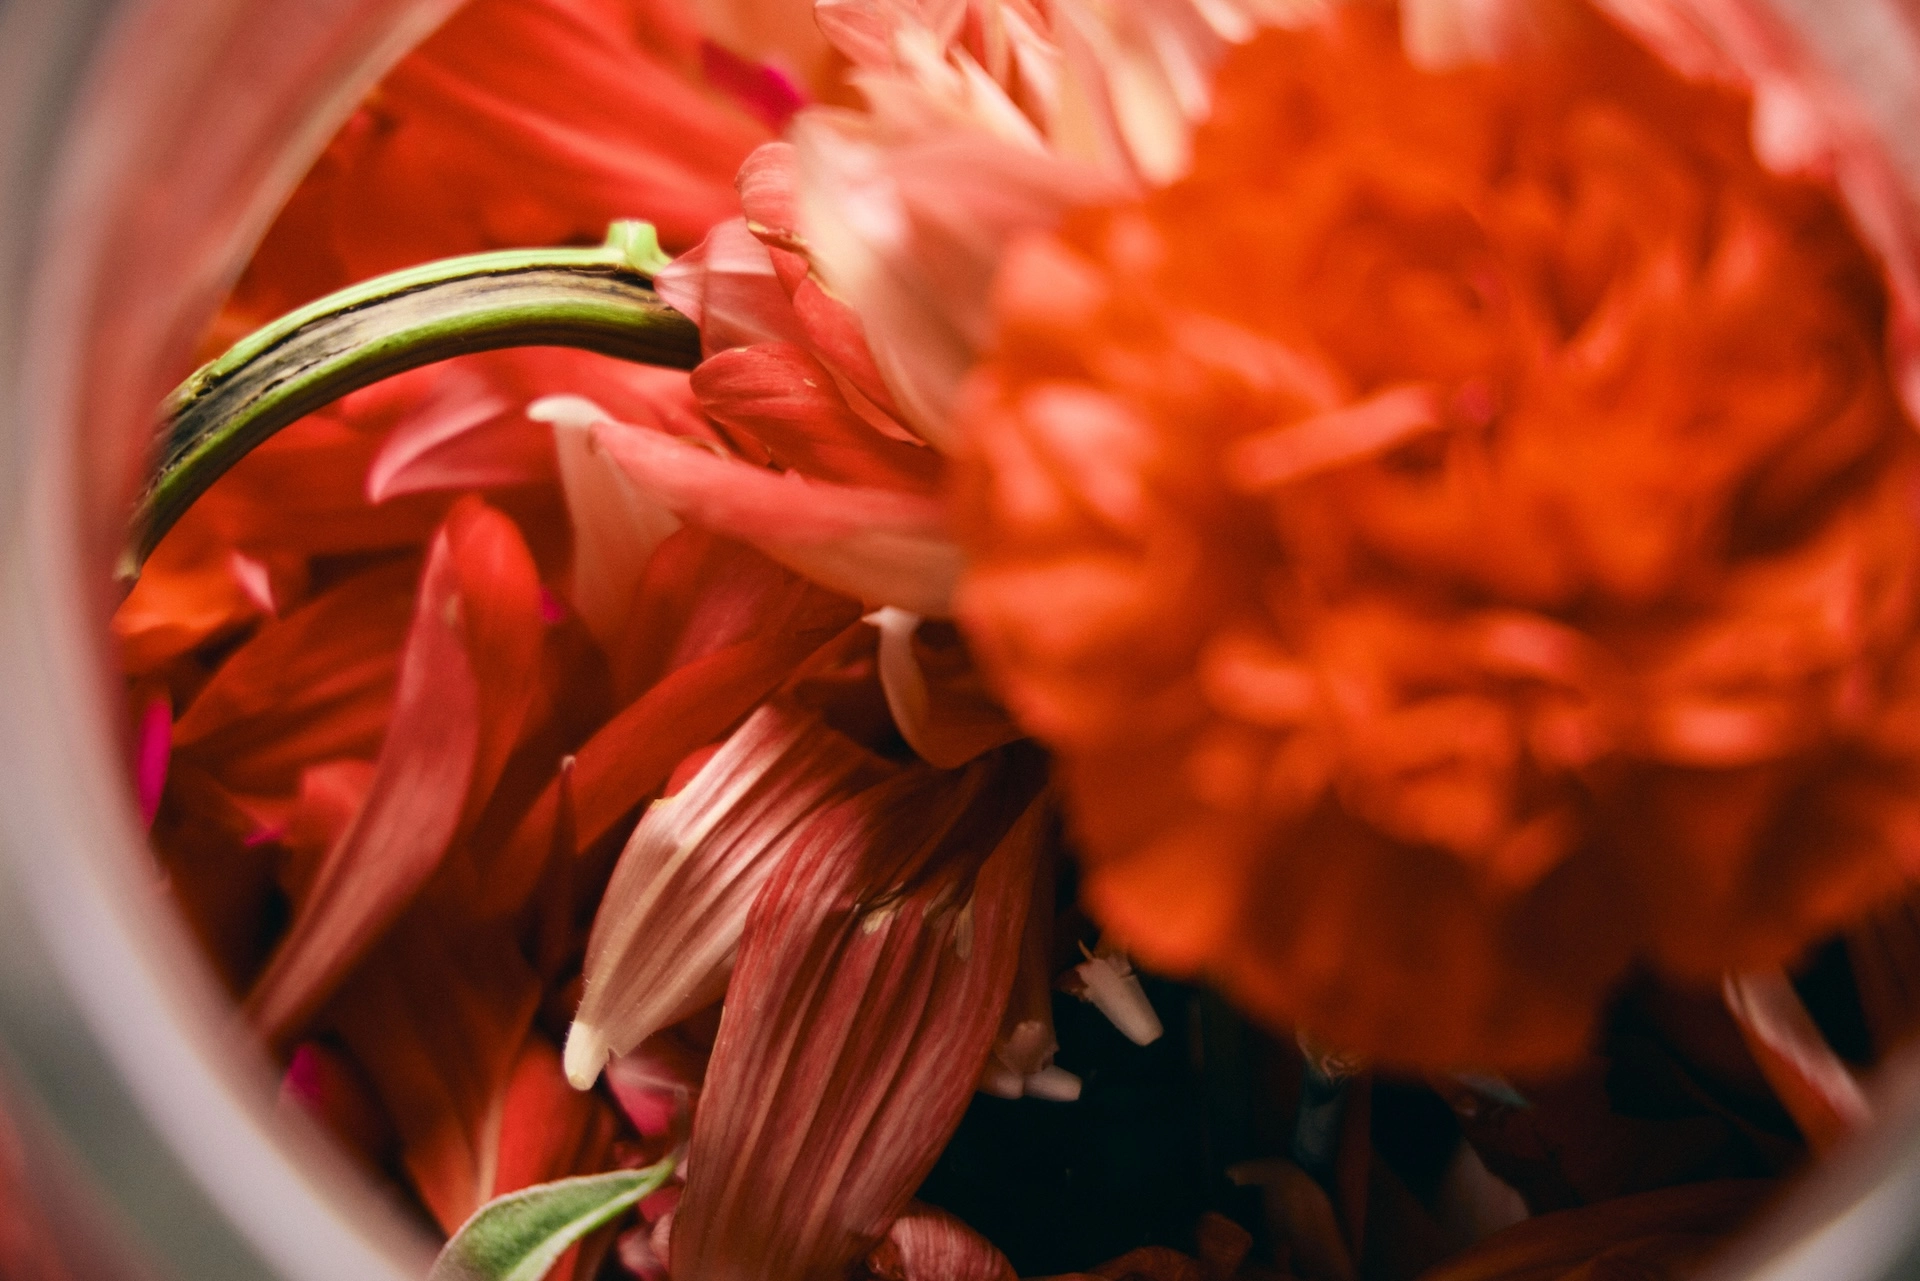 ガラス容器の中に詰められた赤い花のアレンジメントのクローズアップ写真。